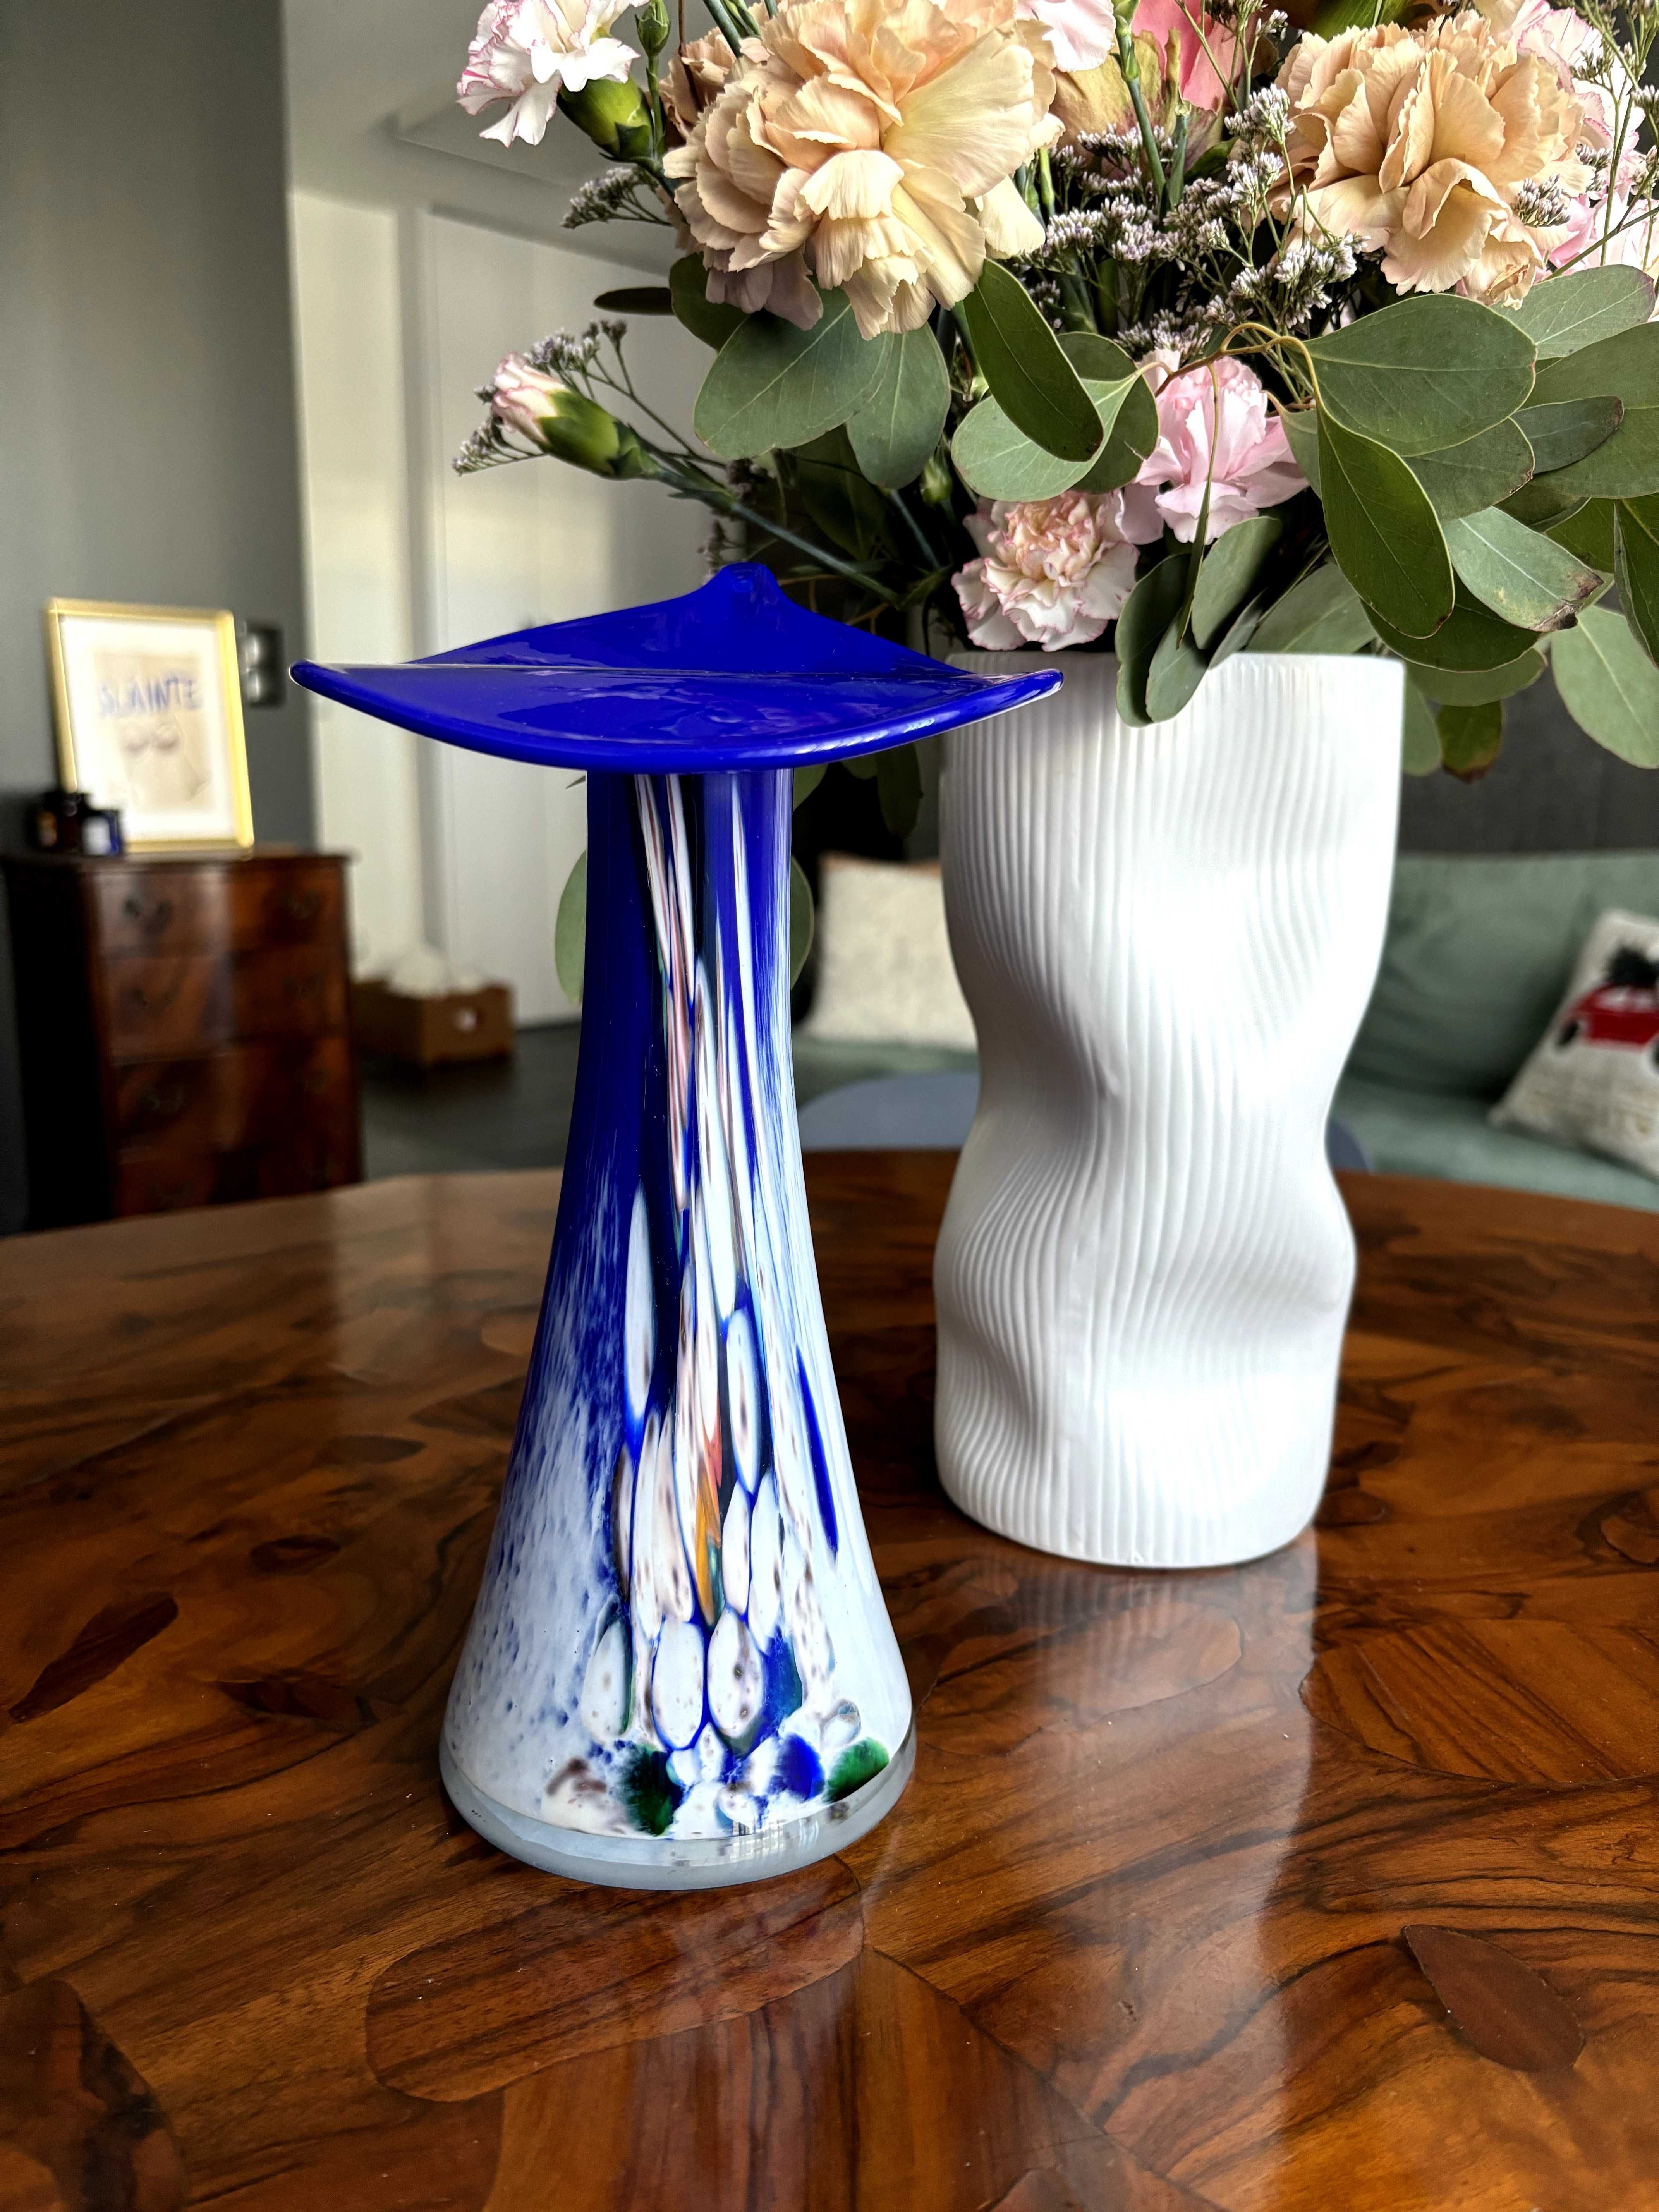 Vintage wazon w wielu kolorach z dominacją kobaltu i bieli